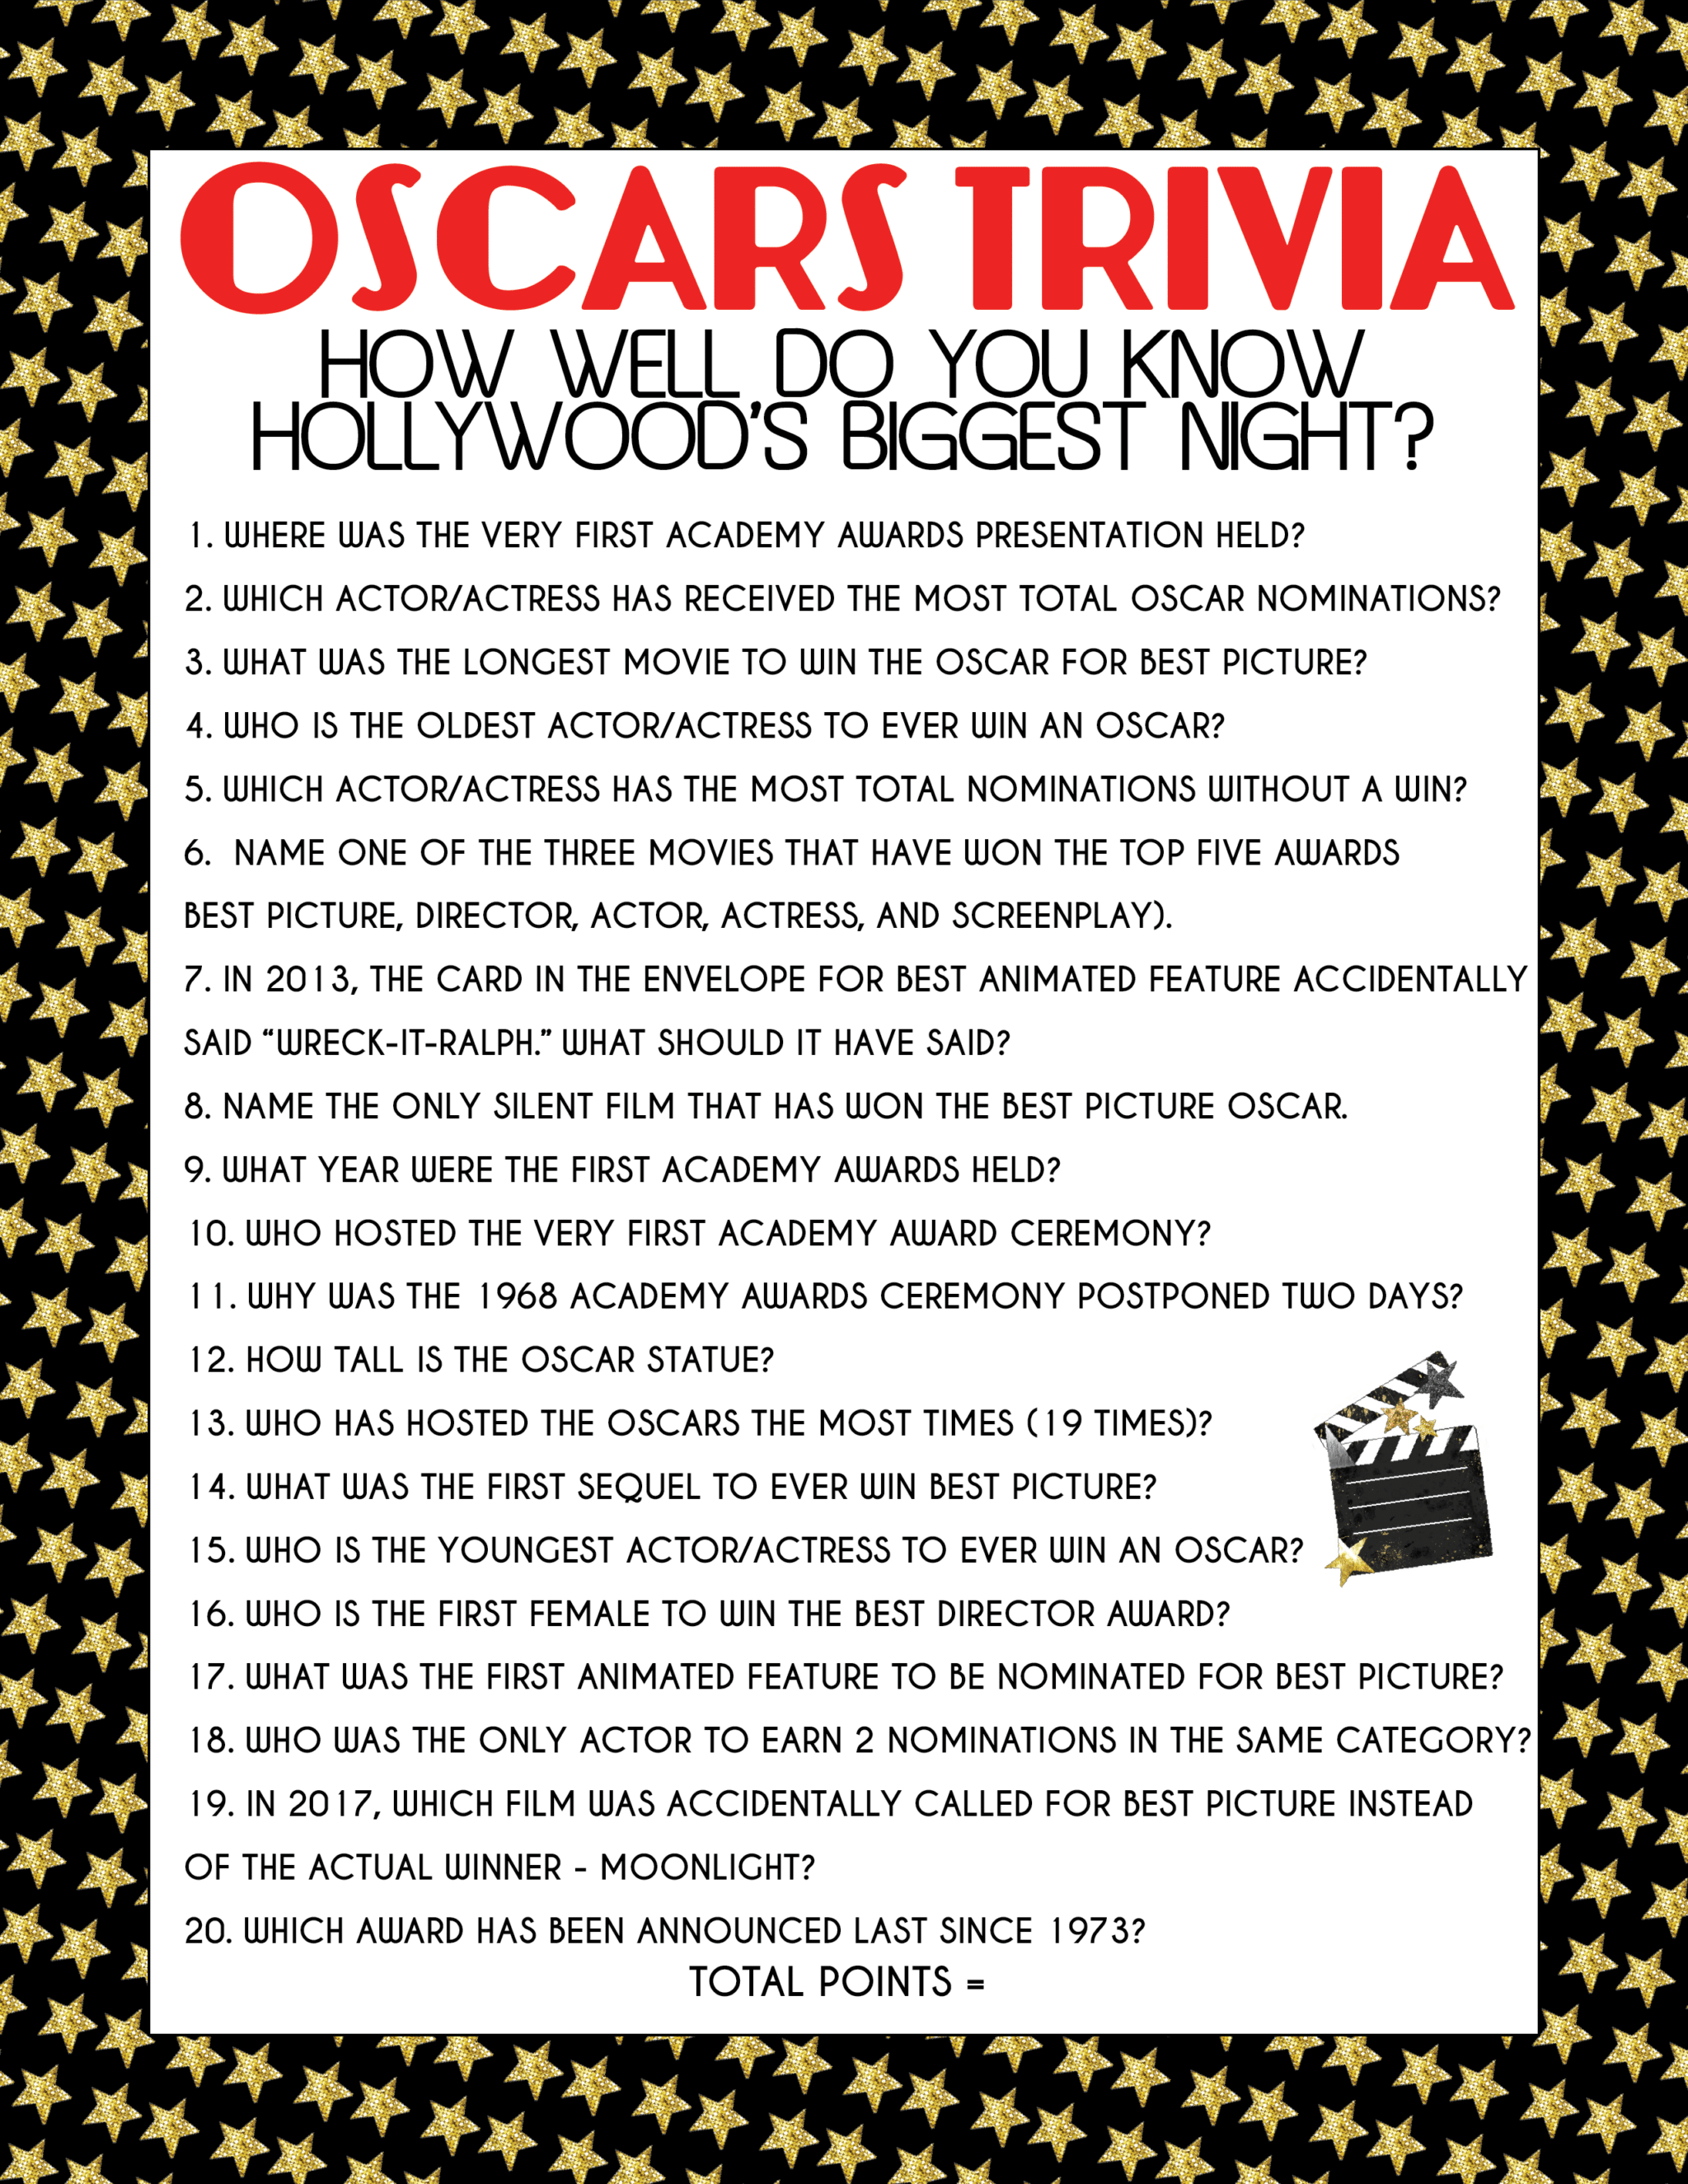 Oscars trivia questions